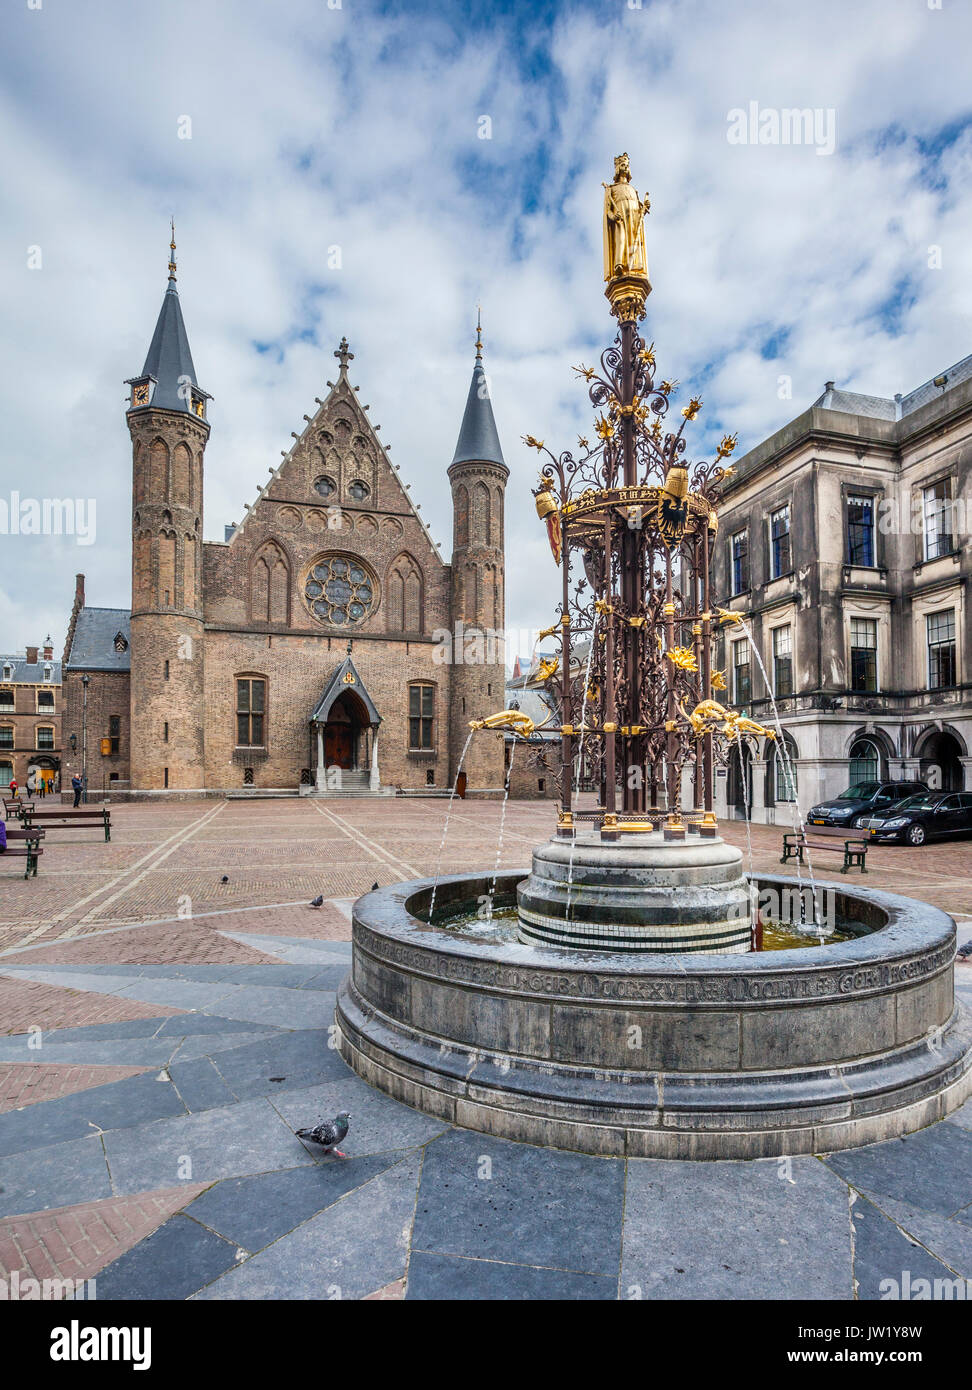 Pays Bas, Hollande-du-Sud, La Haye (Den Haag), vue de Binnenhof avec fontaine gothique doré et de la Ridderzaal (salle des Chevaliers) Banque D'Images